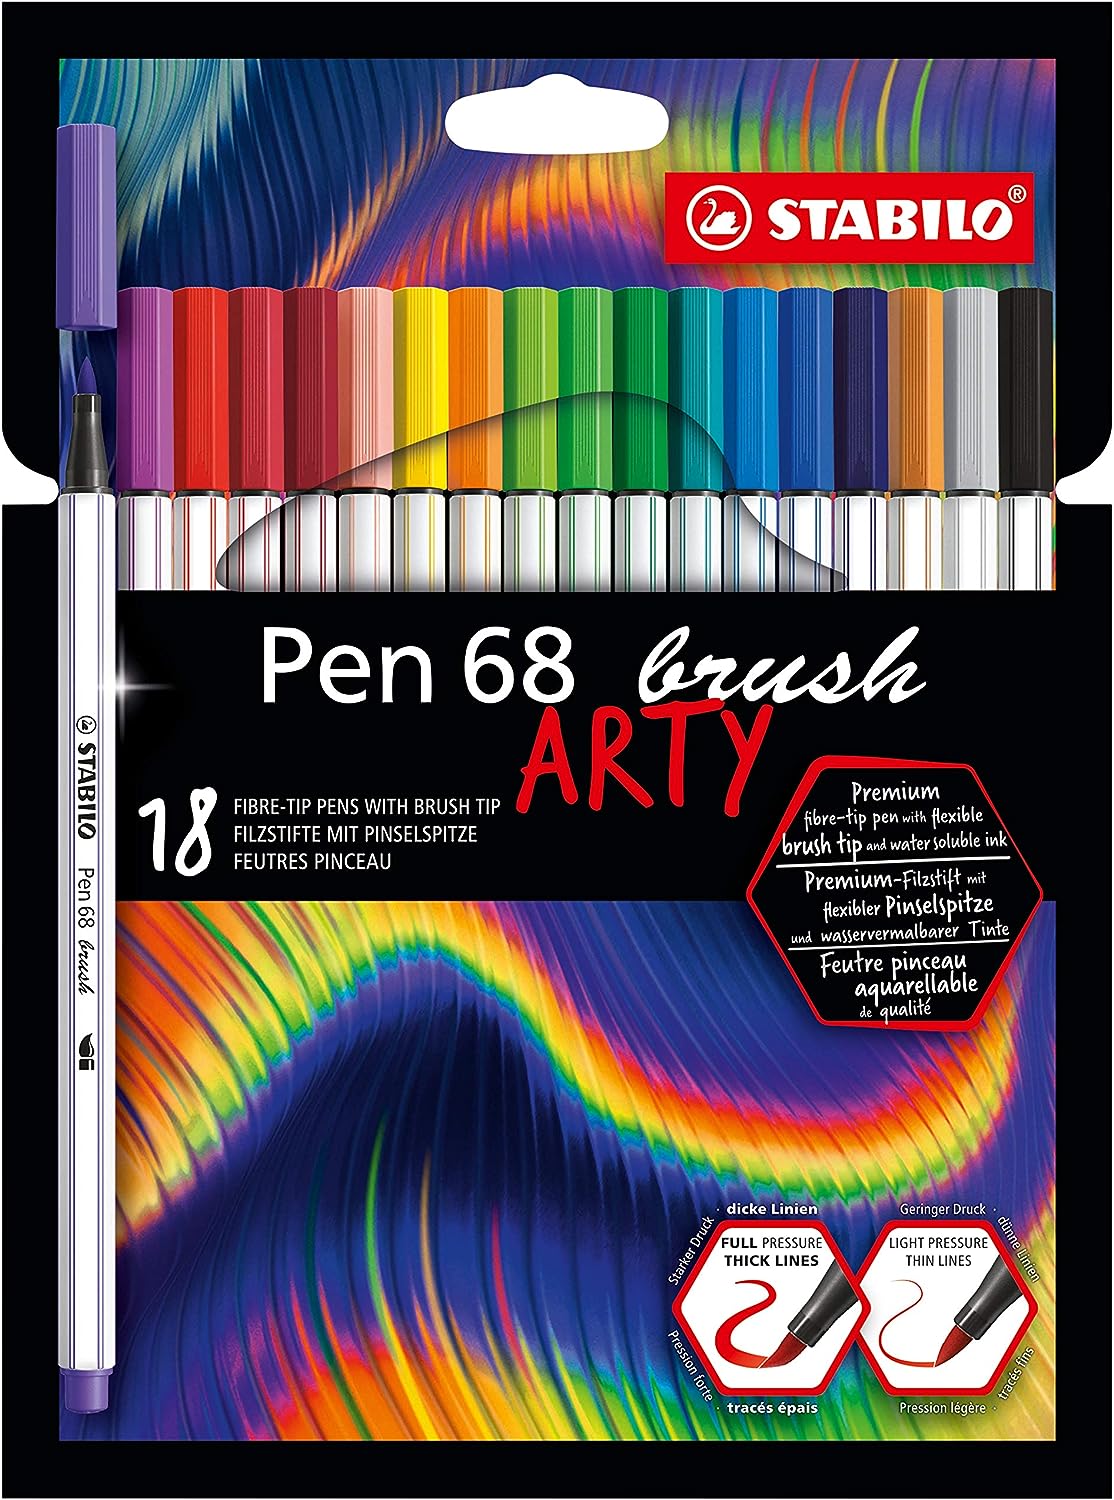 Pen 68 brush - ARTY - Astuccio da 18 - Colori assortiti